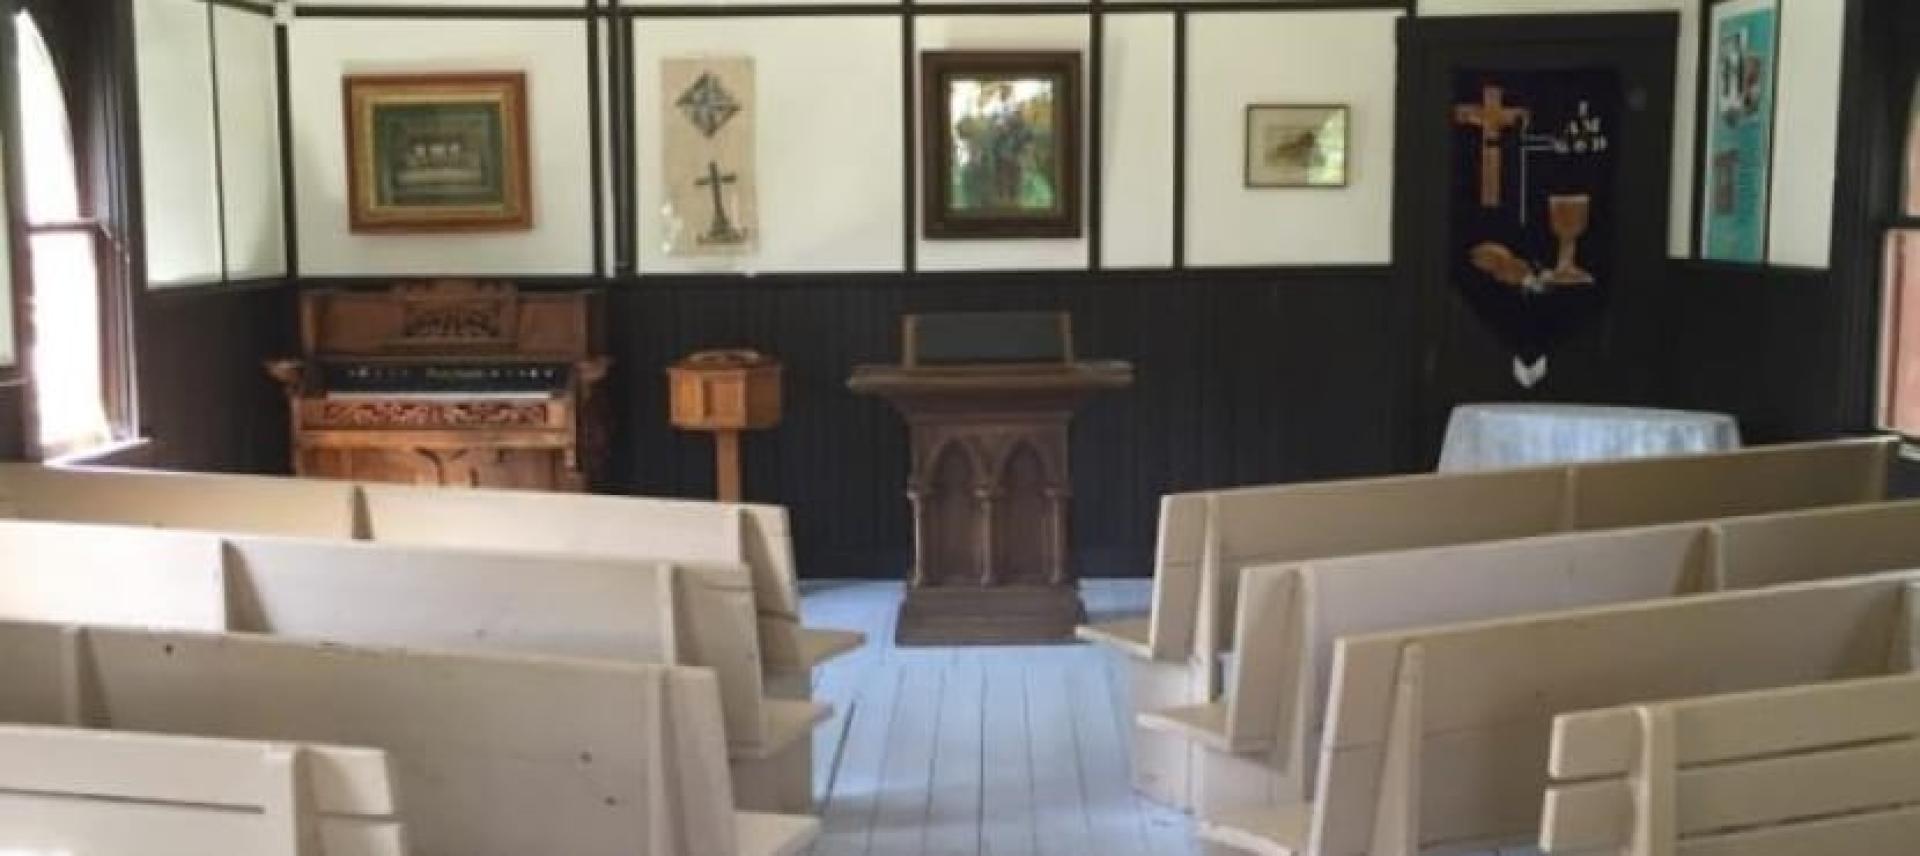 McQueen Presbyterian Church - Interior